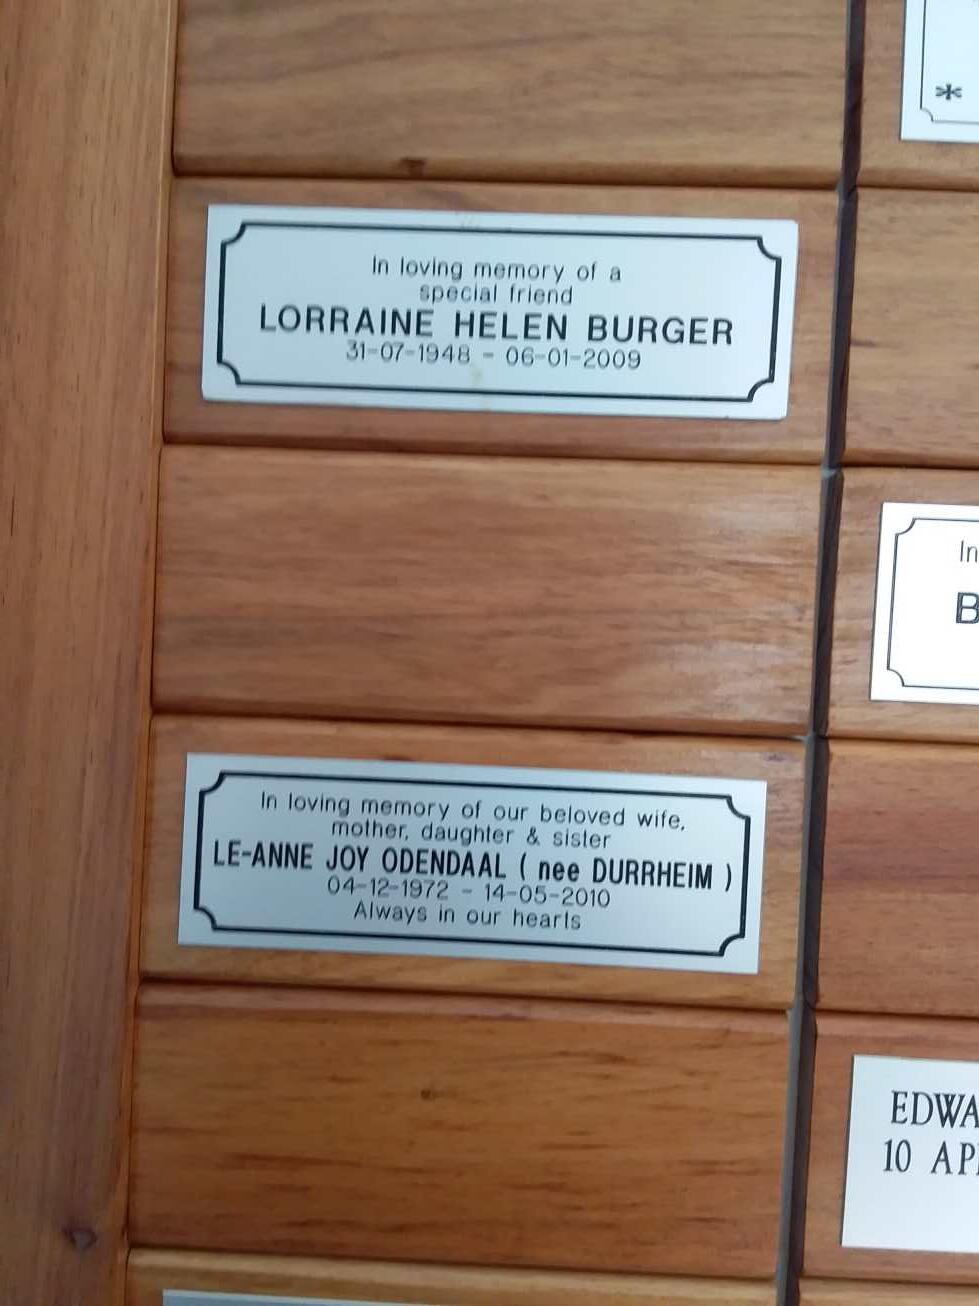 BURGER Lorraine Helen 1948-2009 :: ODENDAAL Le-Anne Joy nee DURRHEIM 1972-2010